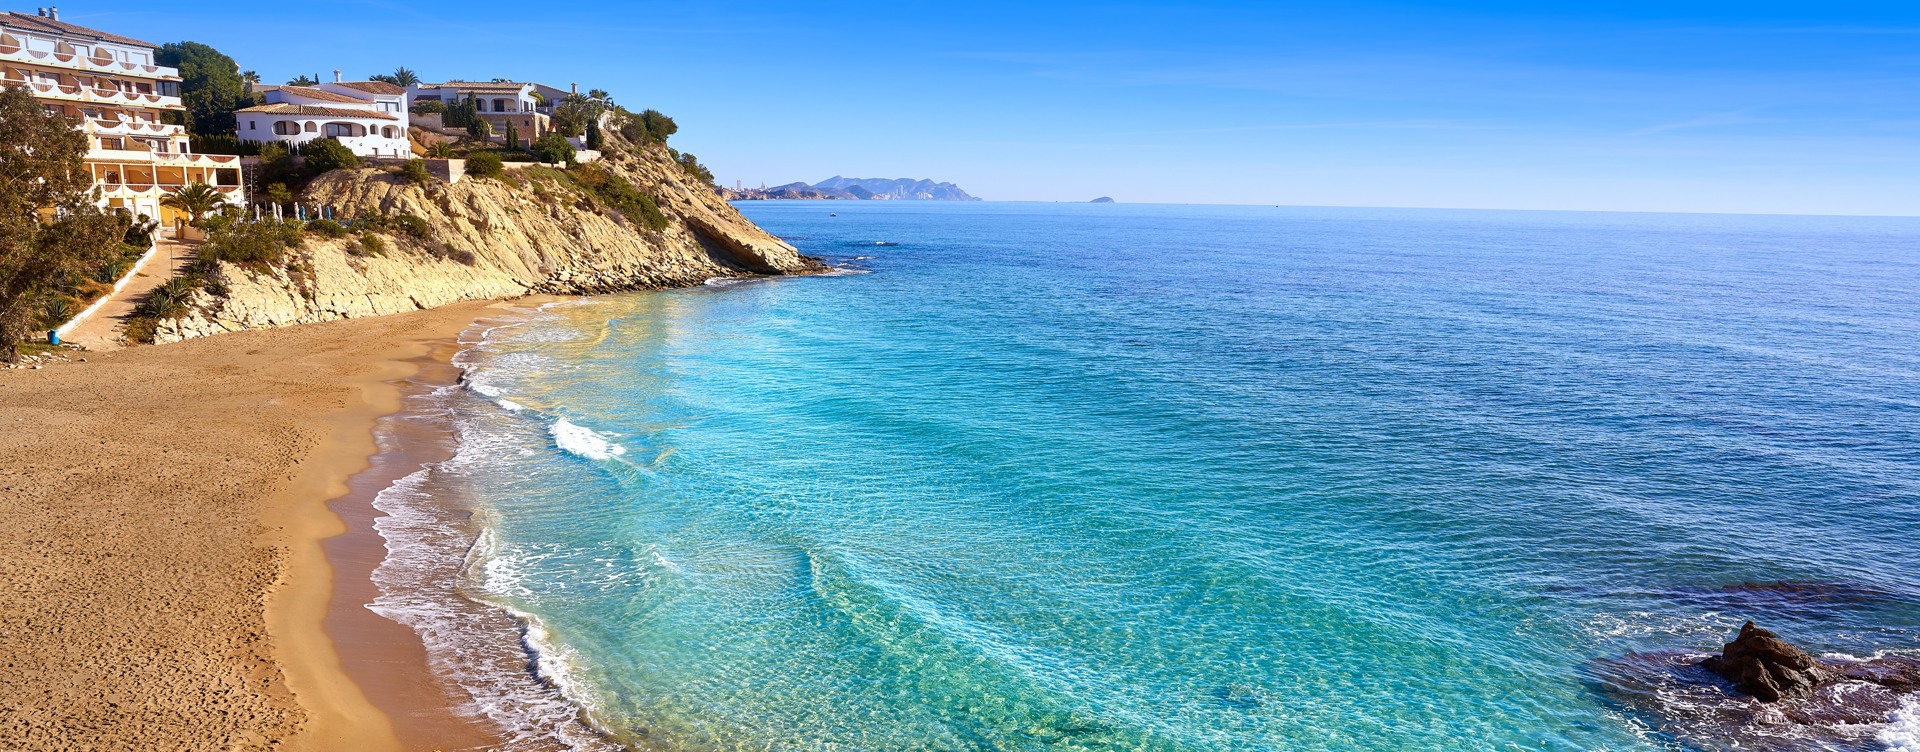 Geniet van een heerlijke zon-, zee- en strandvakantie
aan de Spaanse kust